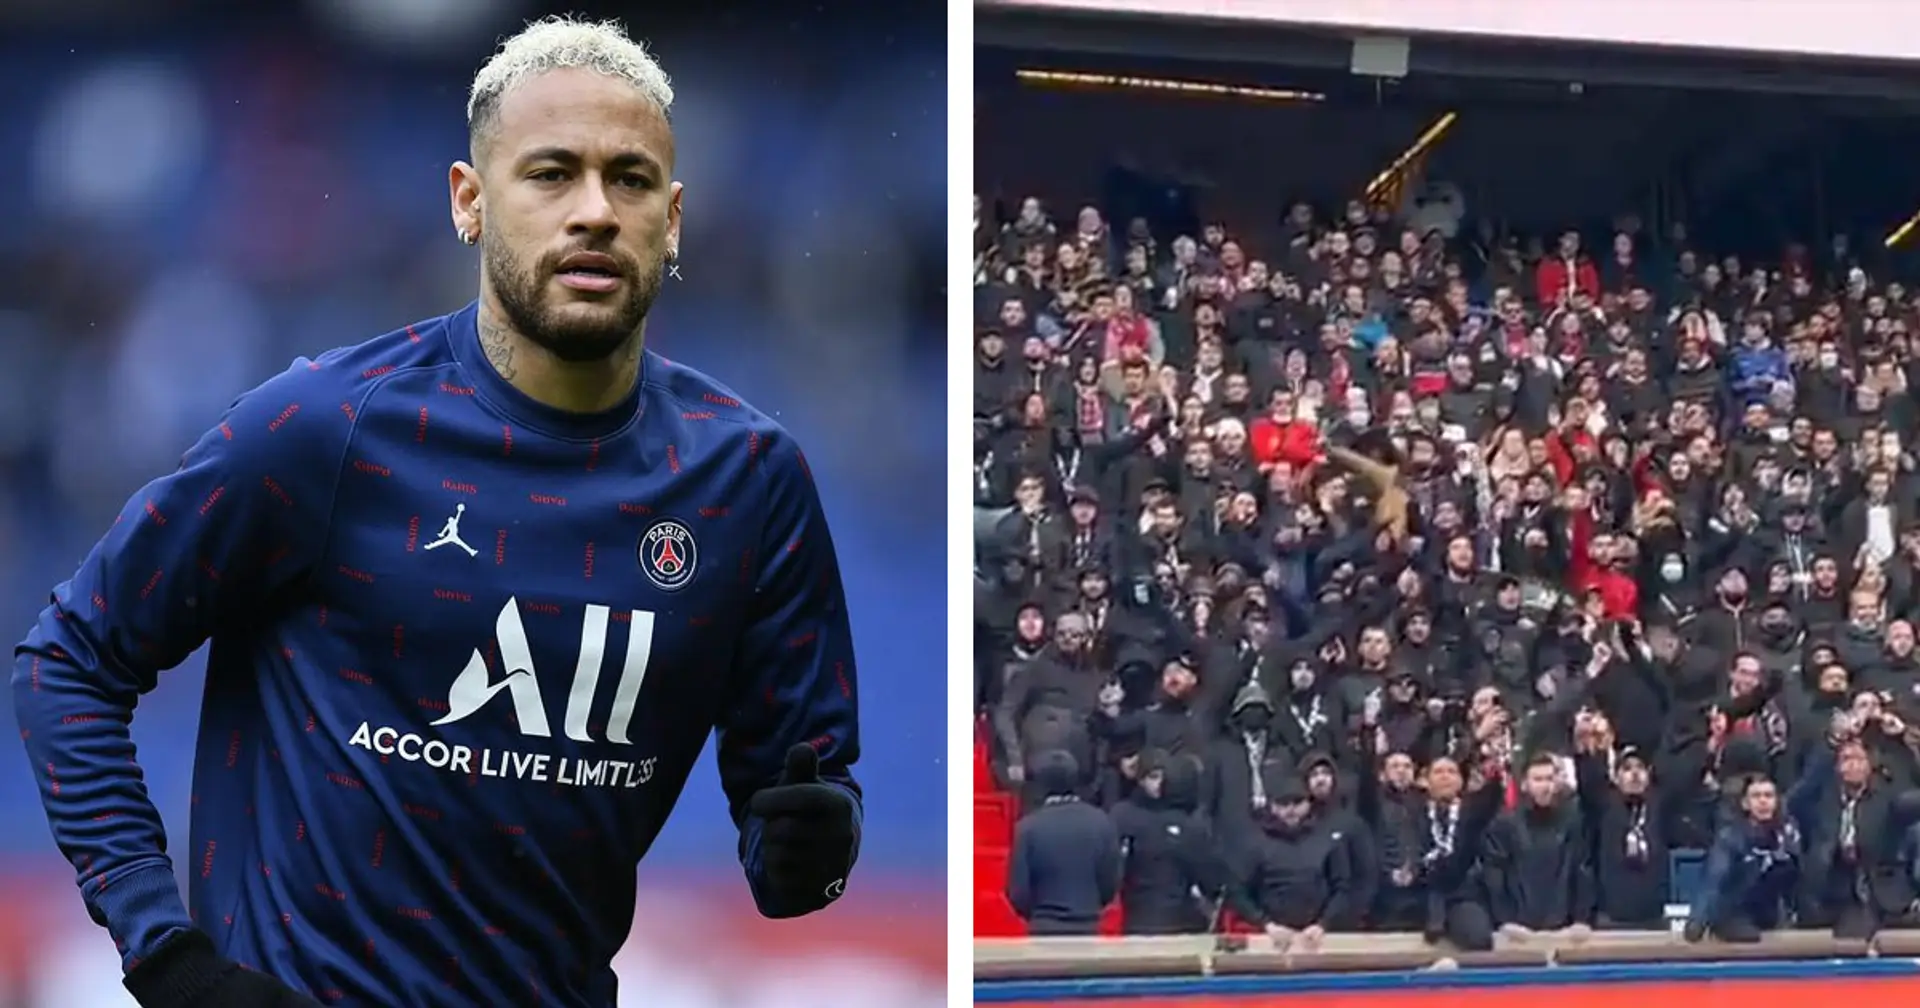 PSG fans sing 'Neymar, son of a b****' in Bordeaux clash